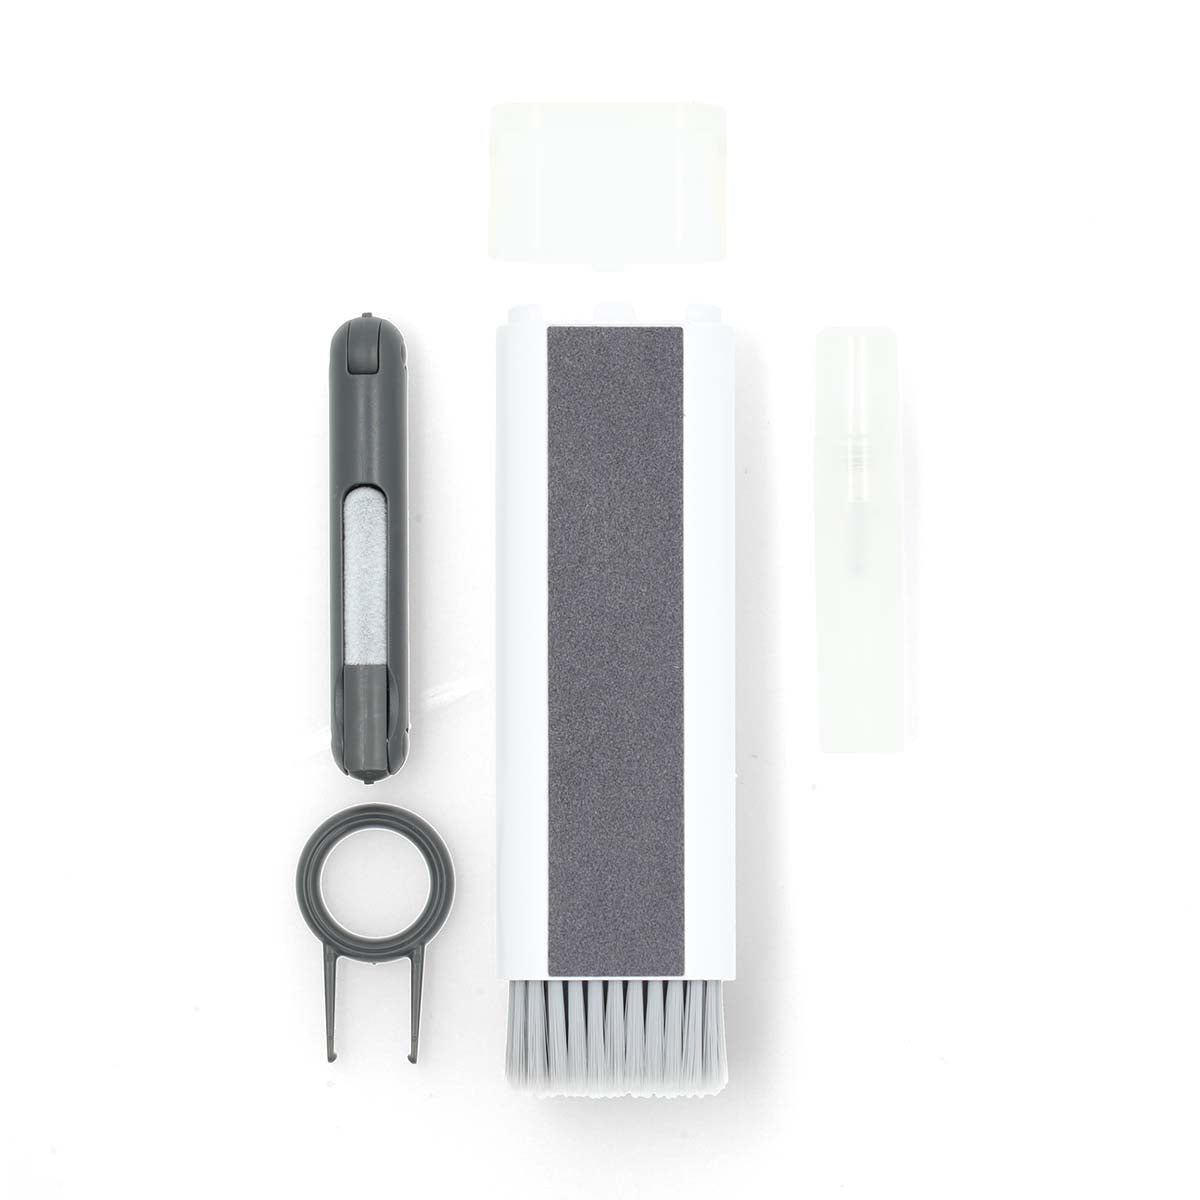 Bildschirmreiniger | Spray | 5 ml | Maus / Notebook / Smartphone / Tablet / Tastatur | Wiper enthalten